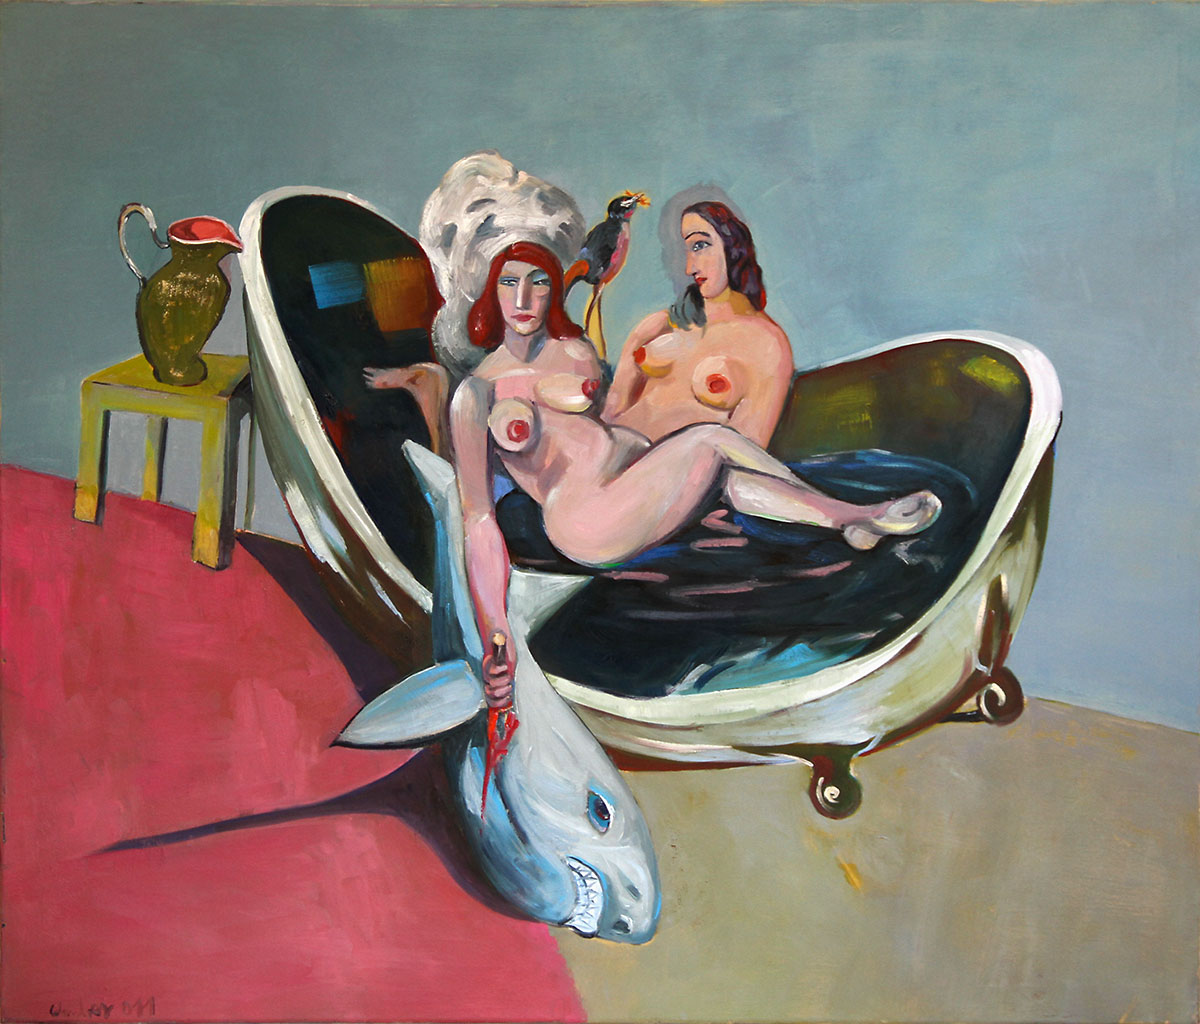 2 Susannen im Bade, 2011, Öl auf Leinwand, 140 × 120 cm, Privatbesitz